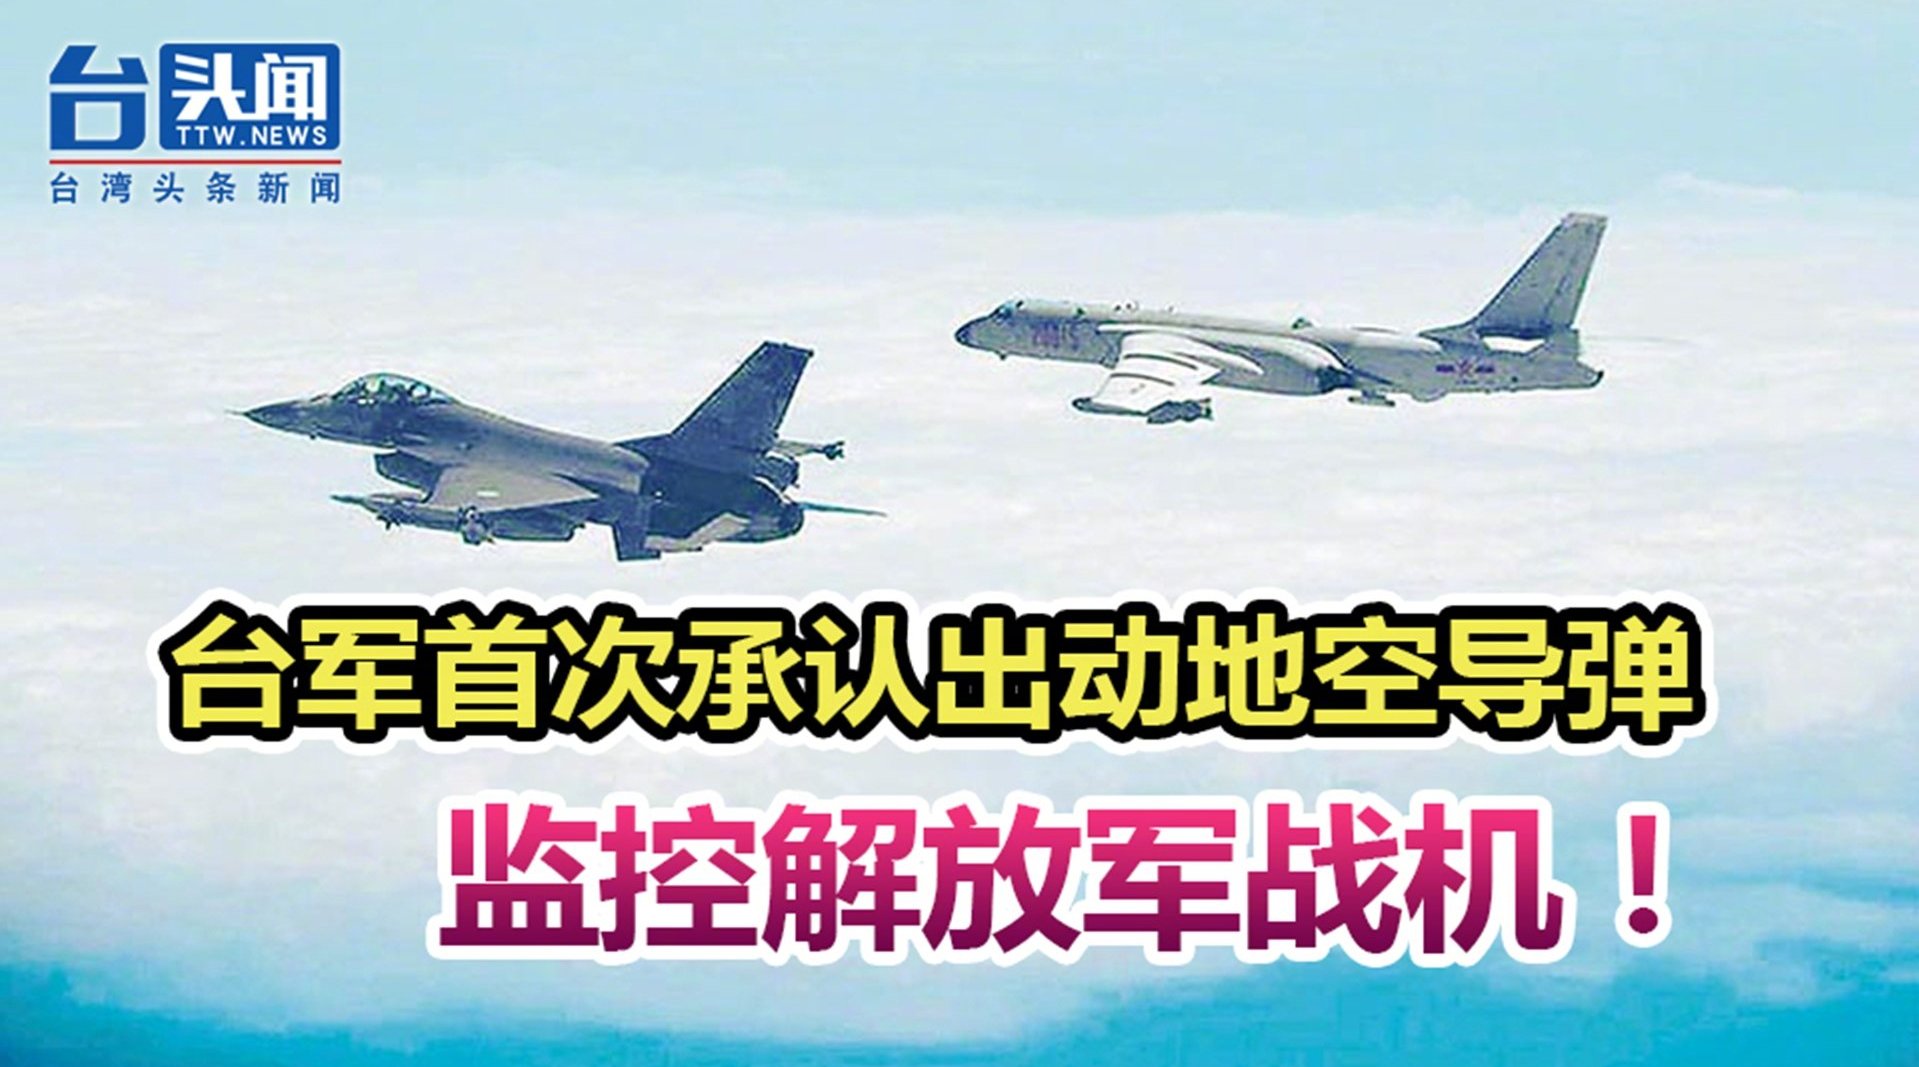 台媒称解放军战机今越过“海峡中线” 台军首认出动地空导弹监控